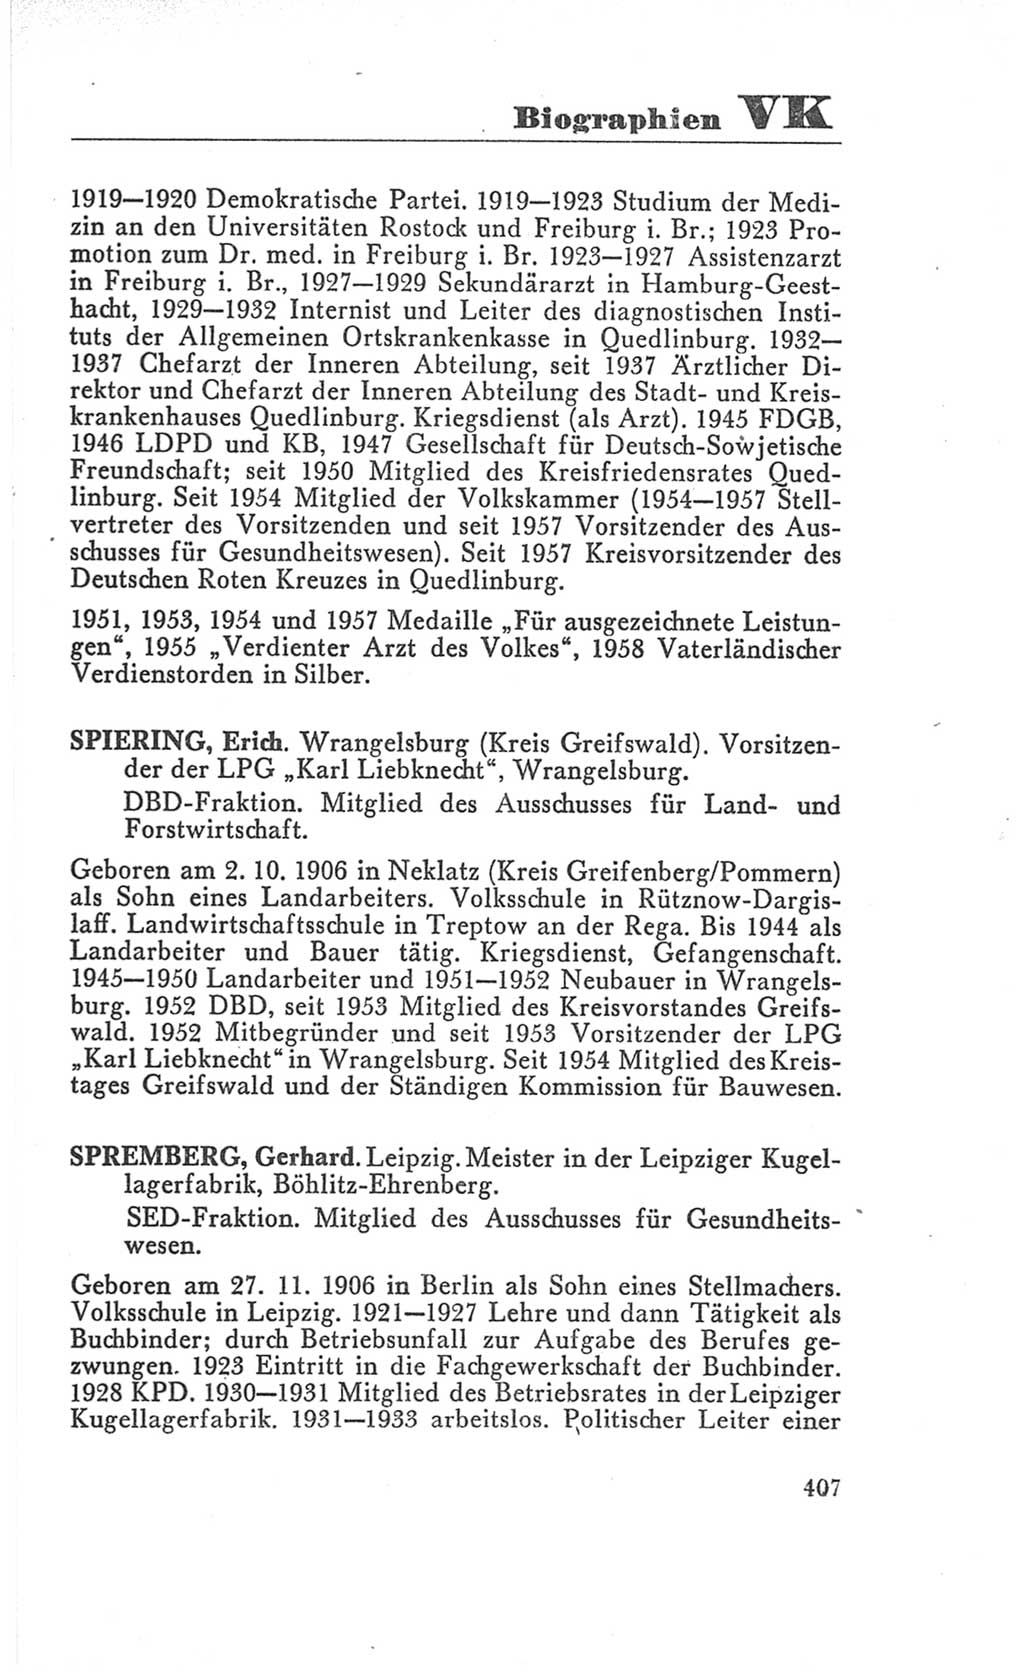 Handbuch der Volkskammer (VK) der Deutschen Demokratischen Republik (DDR), 3. Wahlperiode 1958-1963, Seite 407 (Hdb. VK. DDR 3. WP. 1958-1963, S. 407)